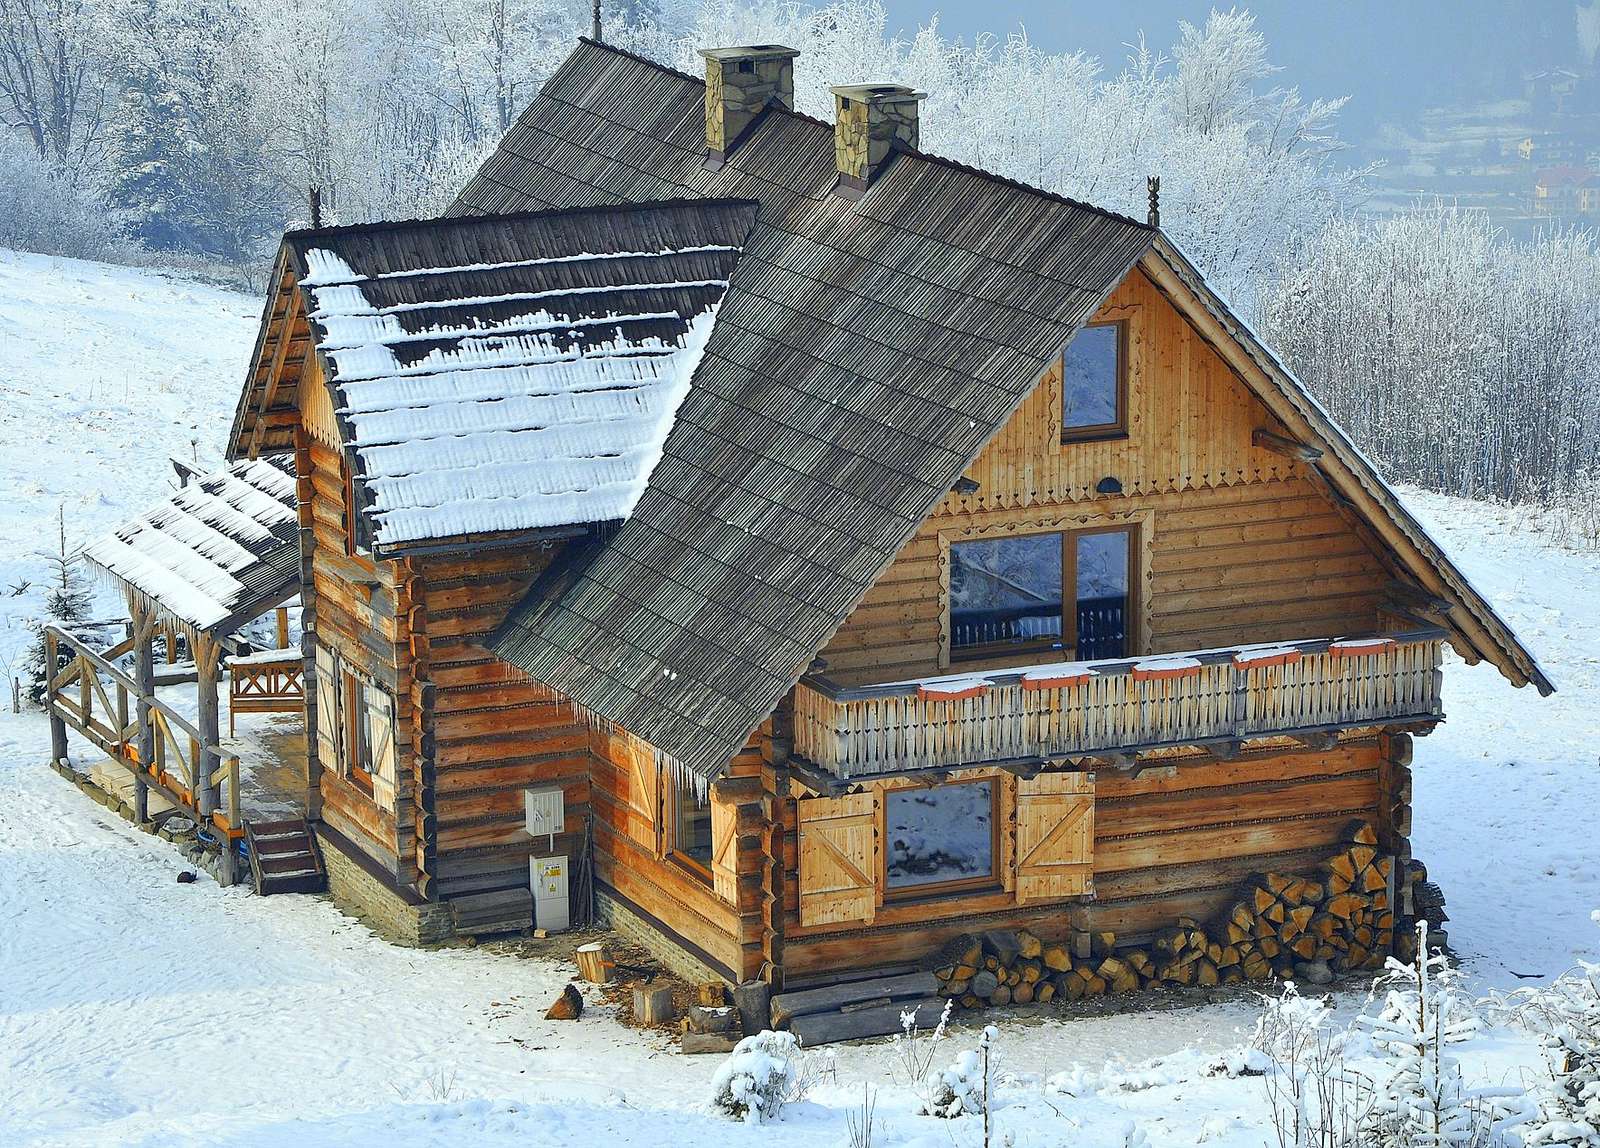 ハイランダー、冬の木造住宅 ジグソーパズルオンライン